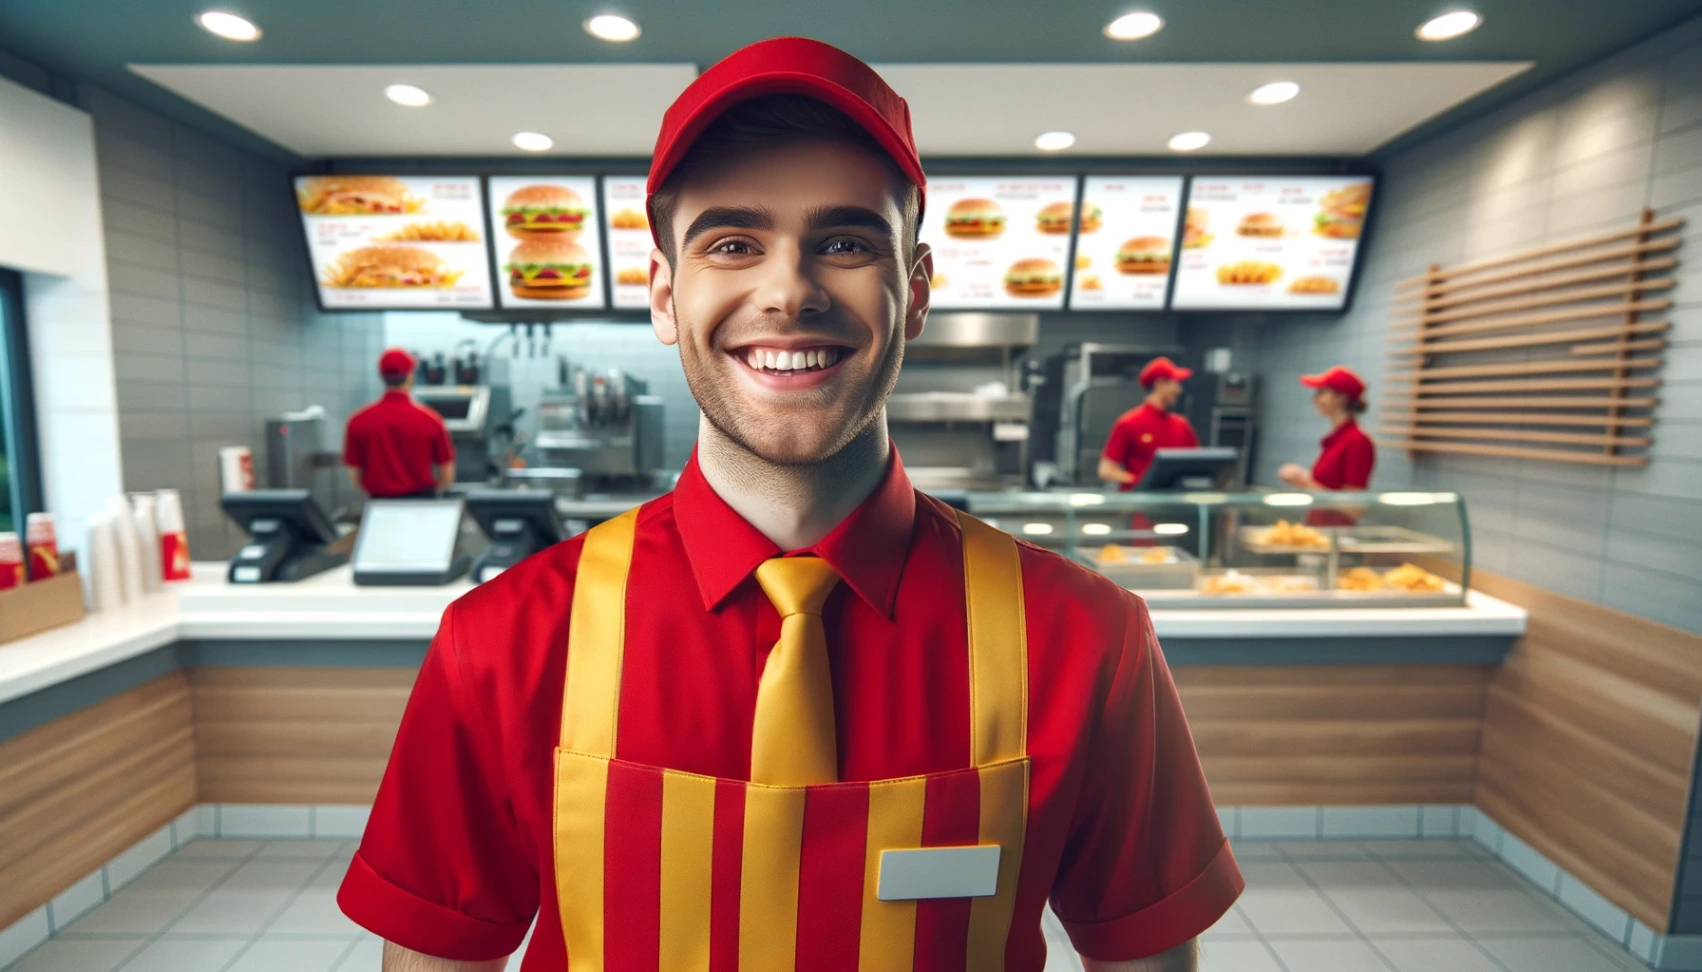 맥도날드의 취업 정보: 온라인으로 쉽게 지원하는 방법